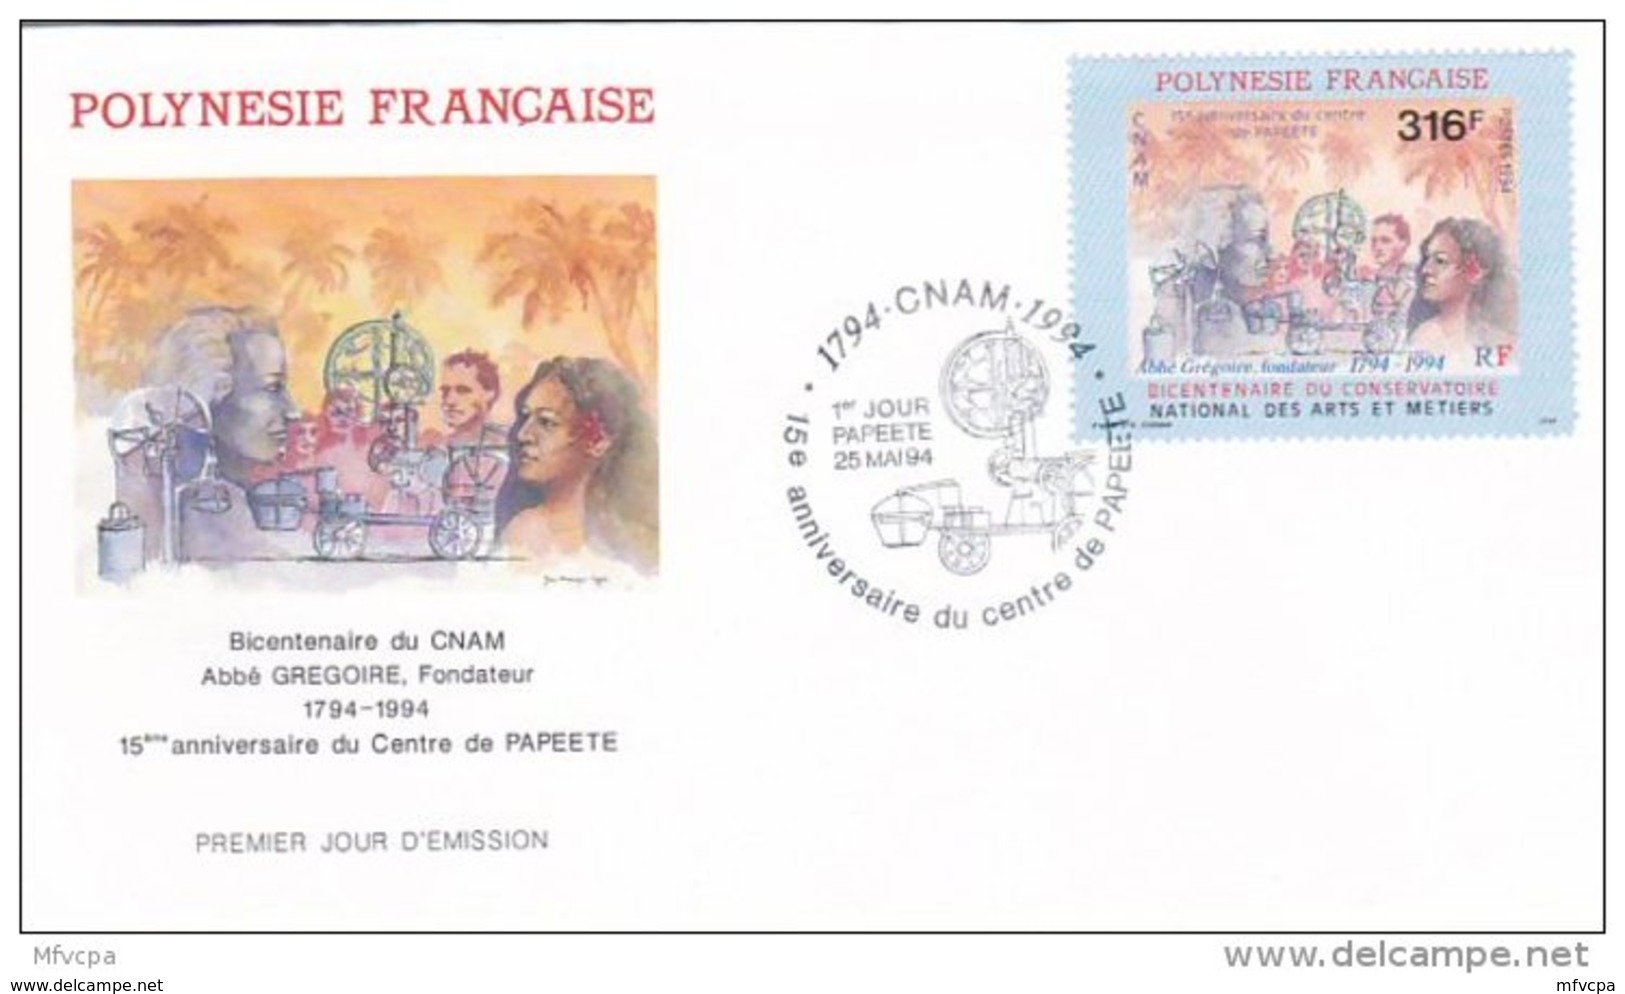 L4P214 POLYNESIE FRANCAISE 1994 FDC Bicentaine Du CNAM Abbé Grégoire  Fondateur  316f Papeete 25 05  1994 / Envel.  Illu - FDC